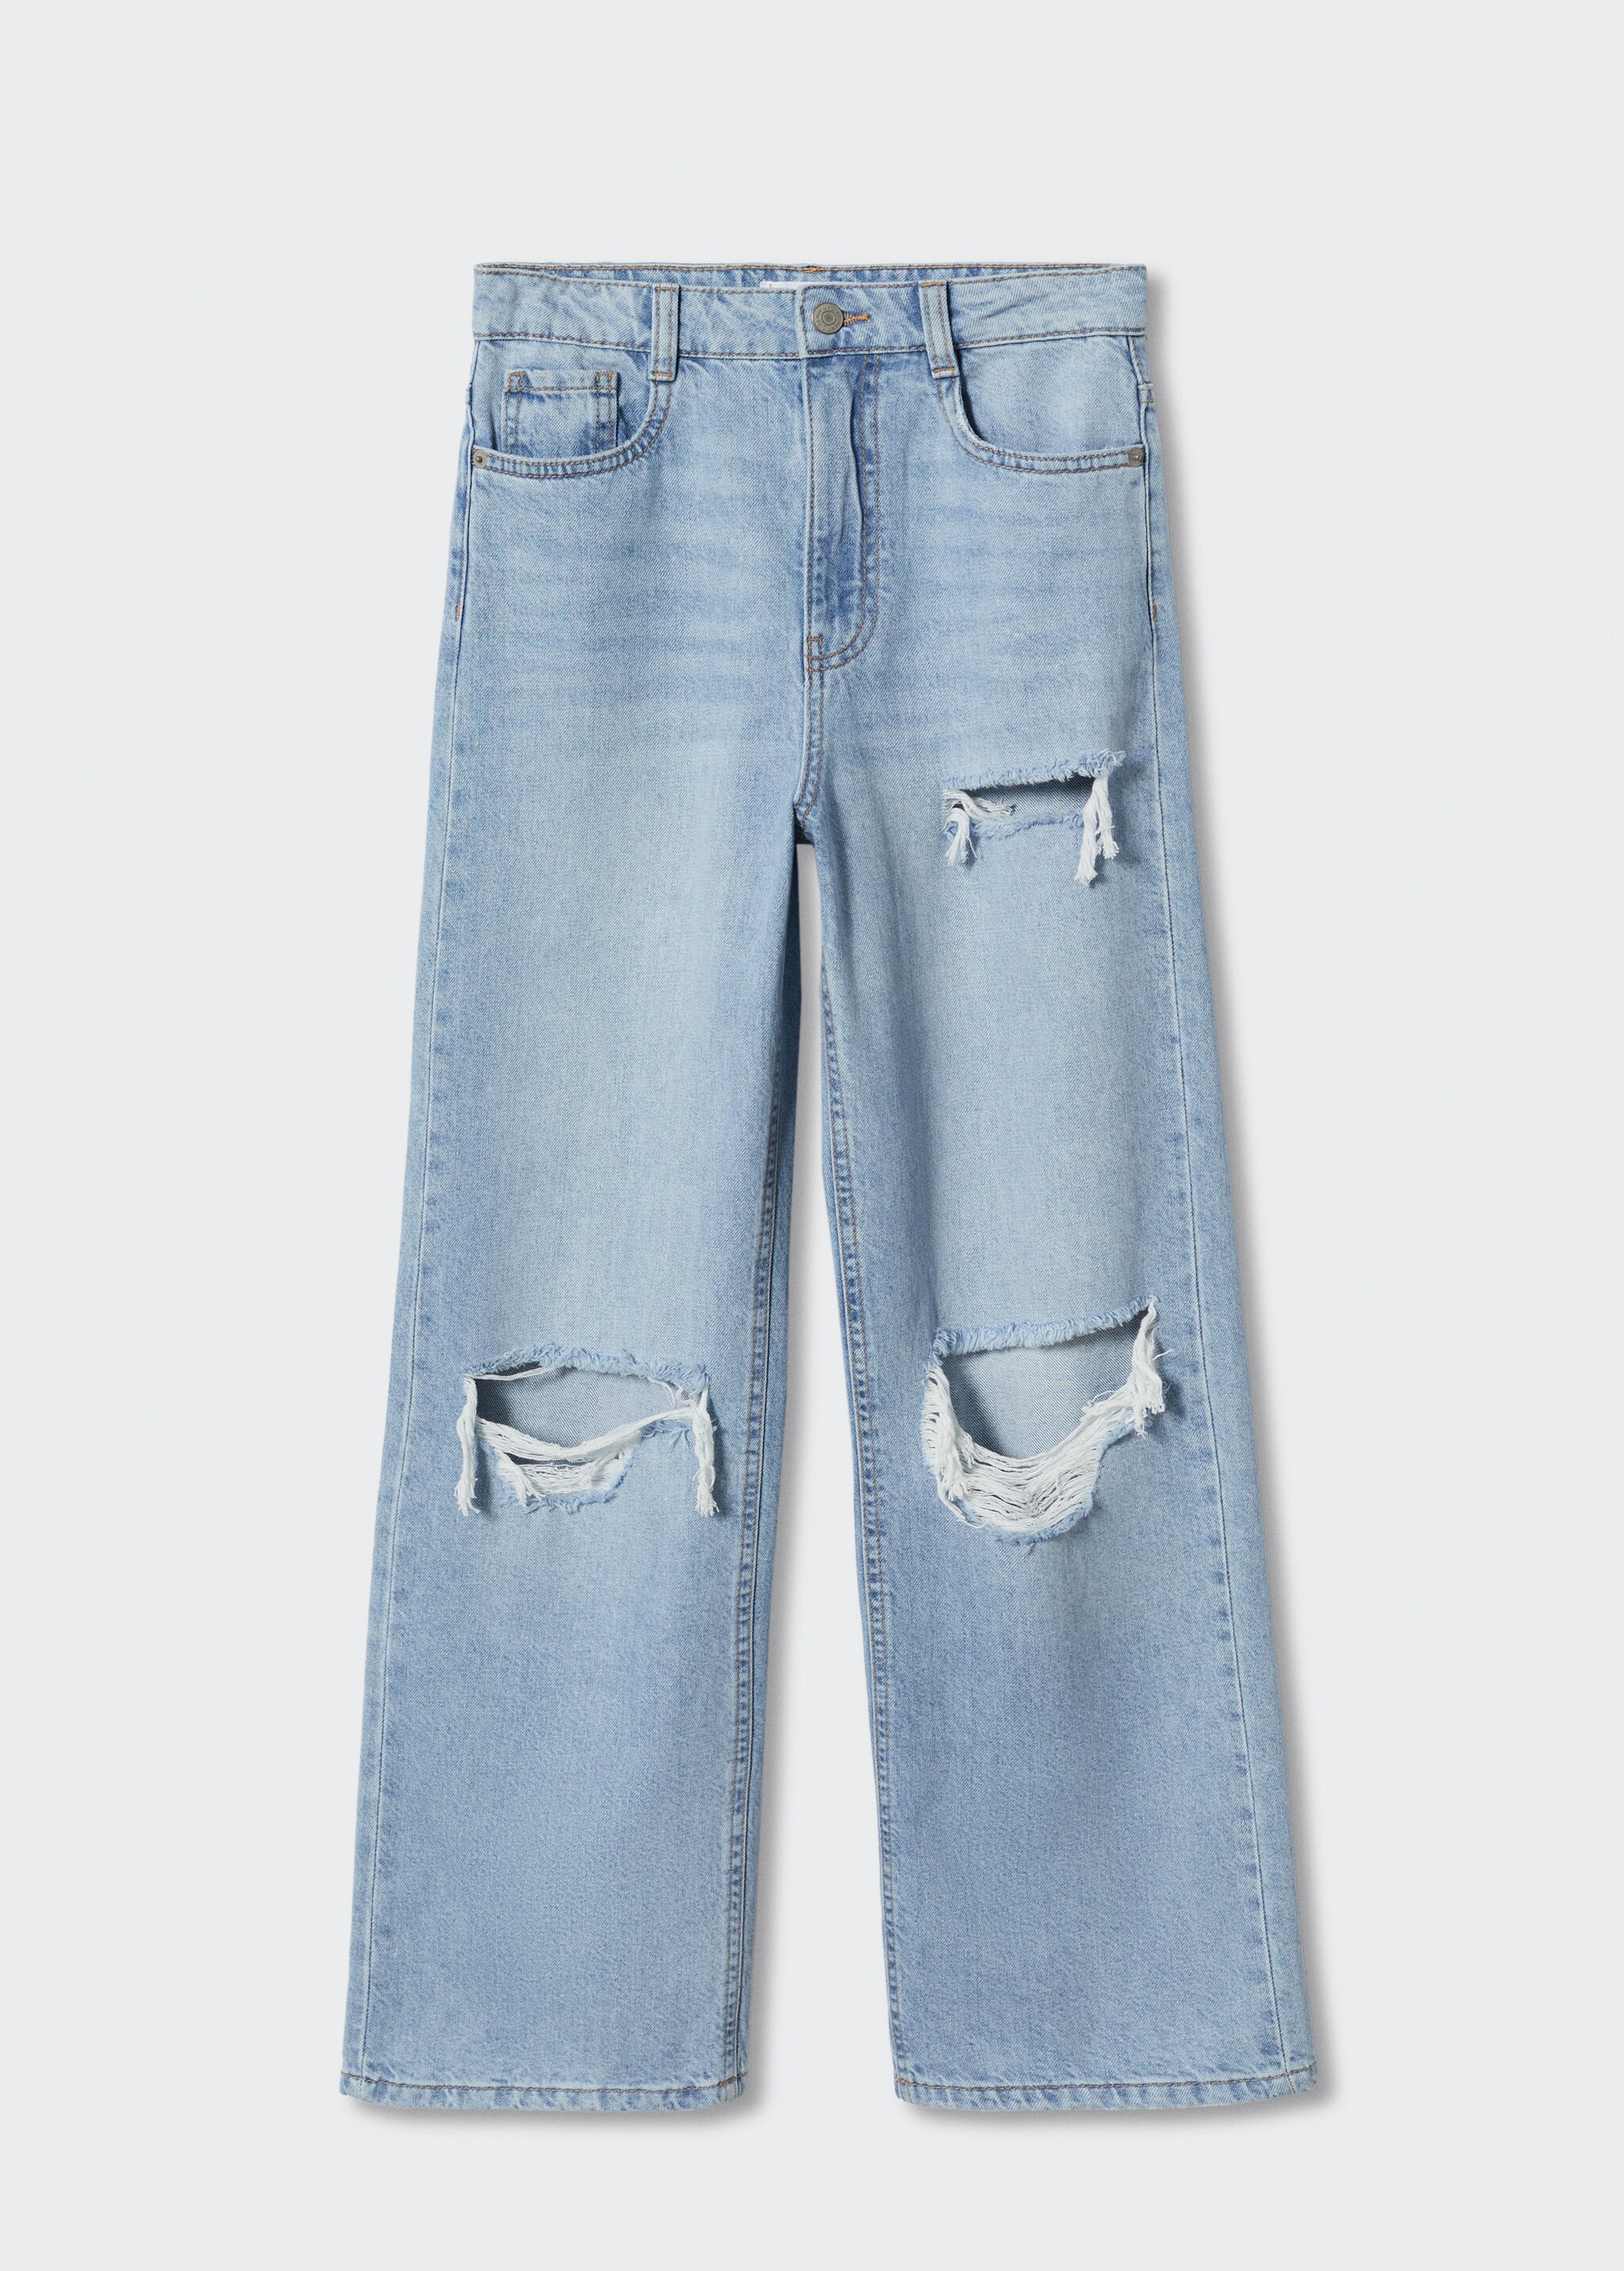 Jeans wideleg rotos decorativos - Artículo sin modelo